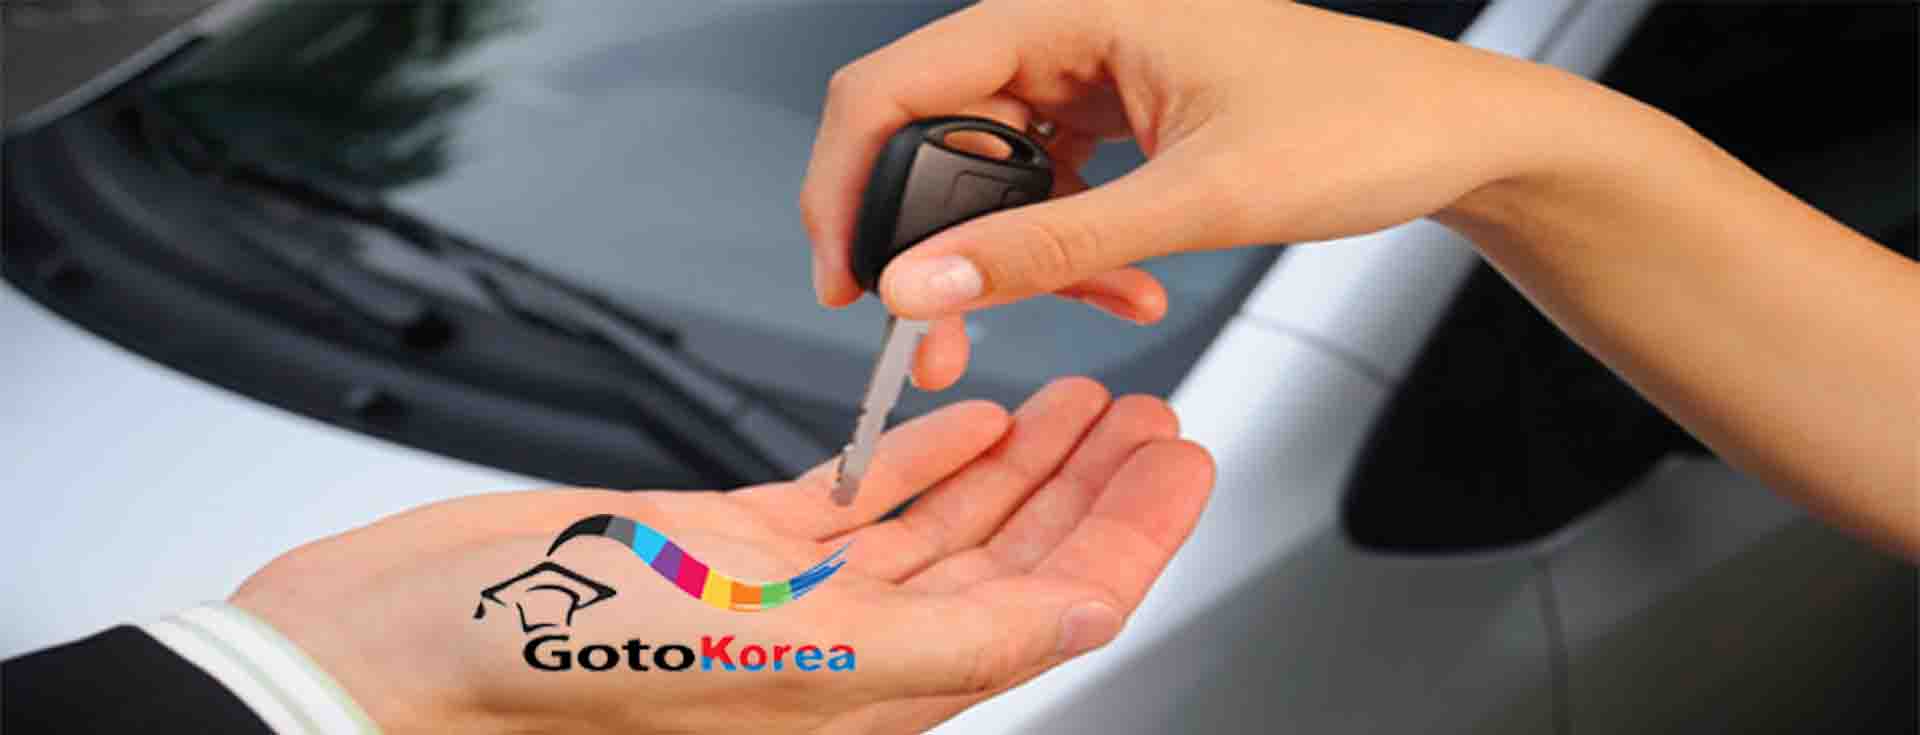 خرید و ثبت خودرو در کره